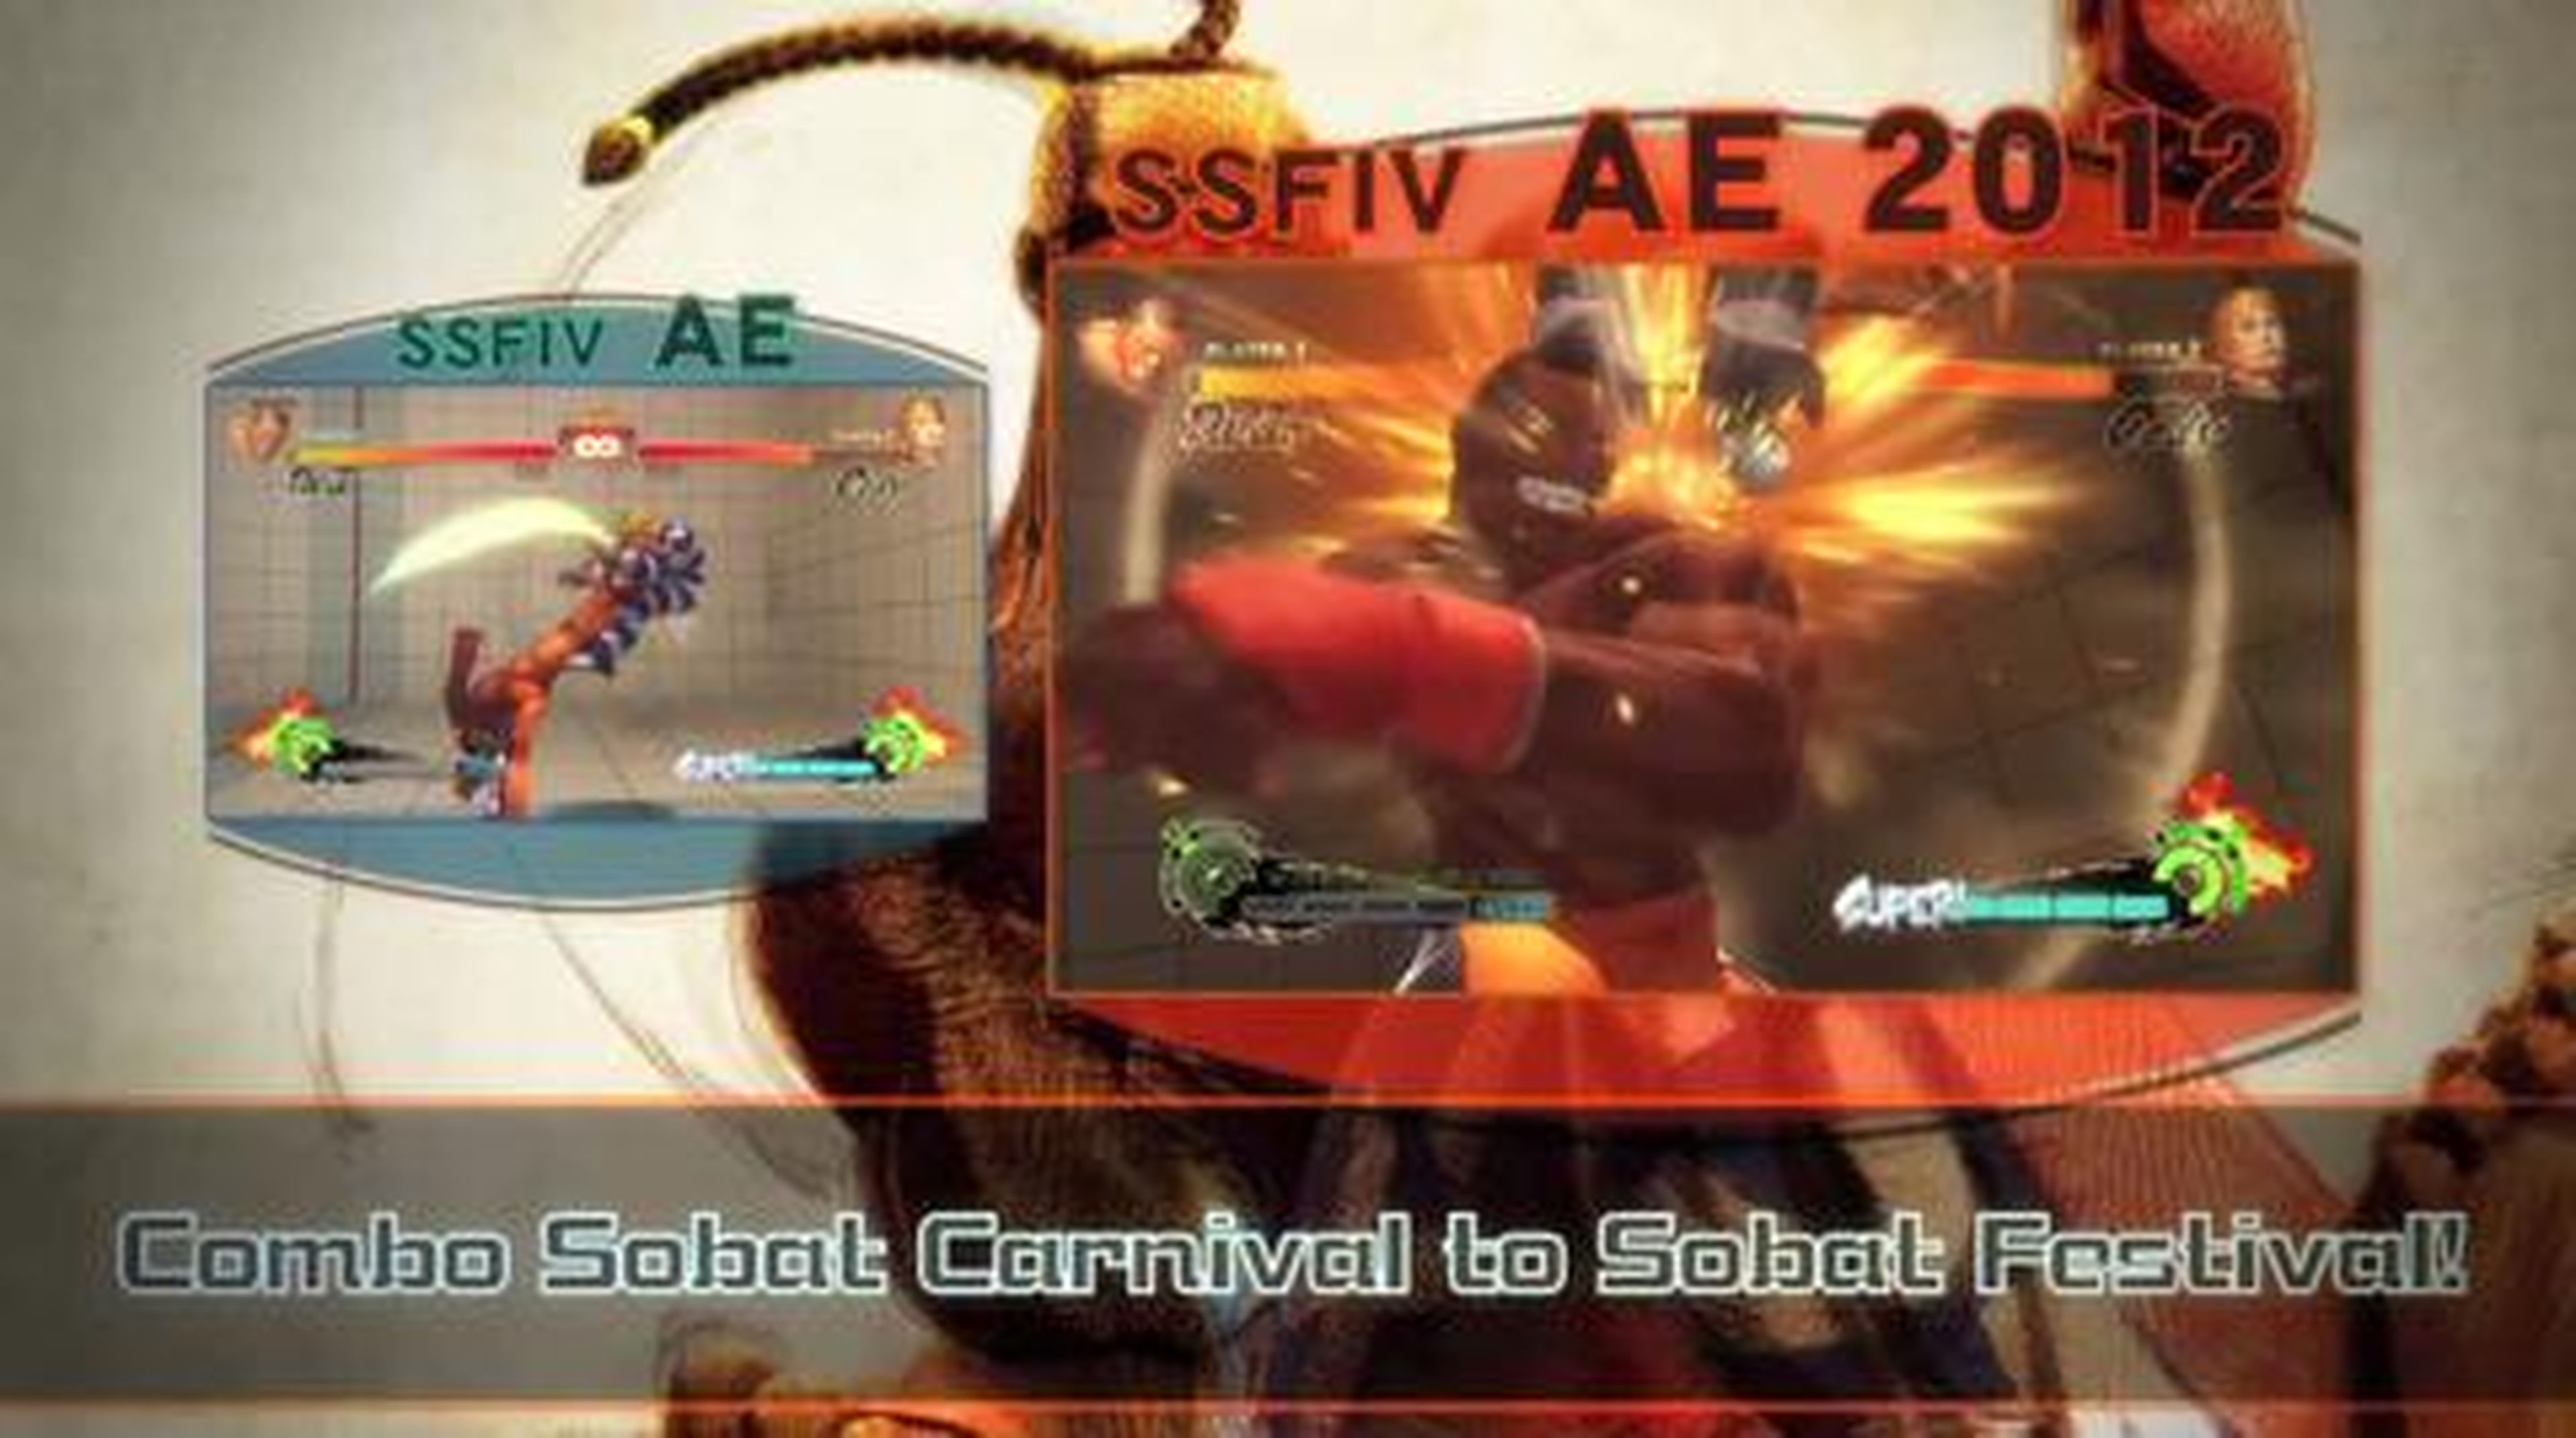 SSF4 Arcade Edition version 2012 en HobbyNews.es